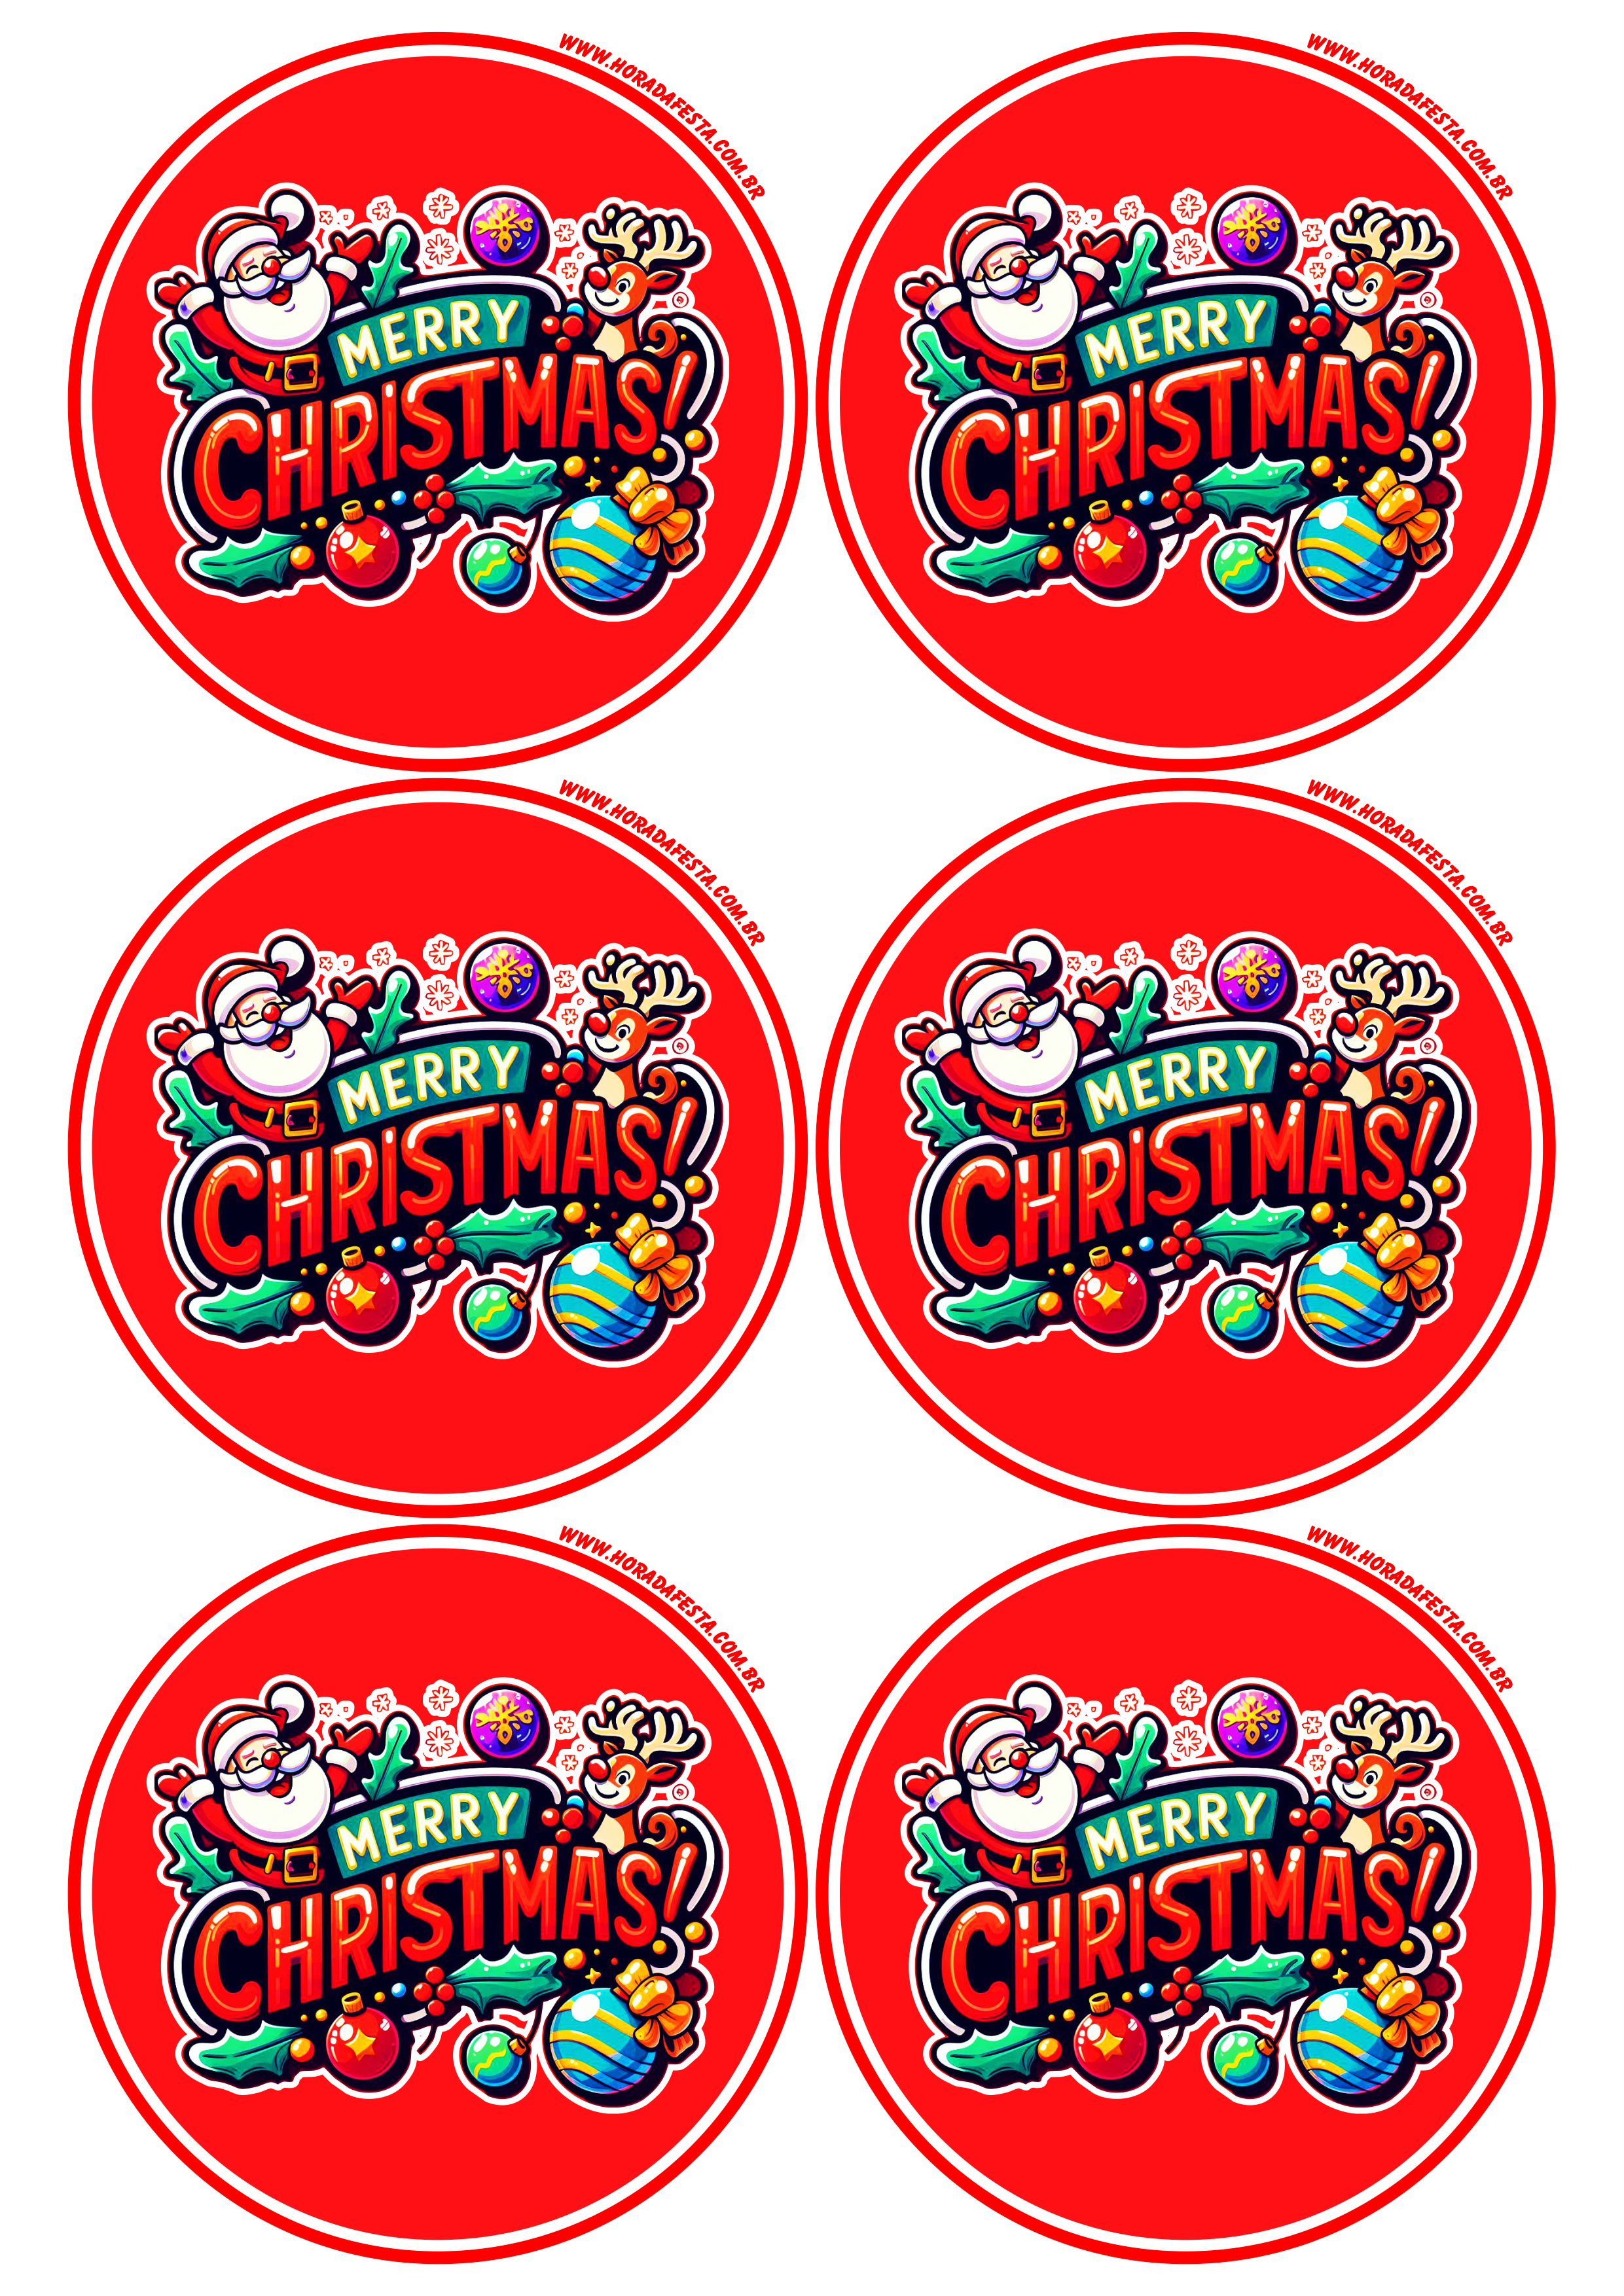 Merry Christmas adesivo redondo decoração 6 imagens png